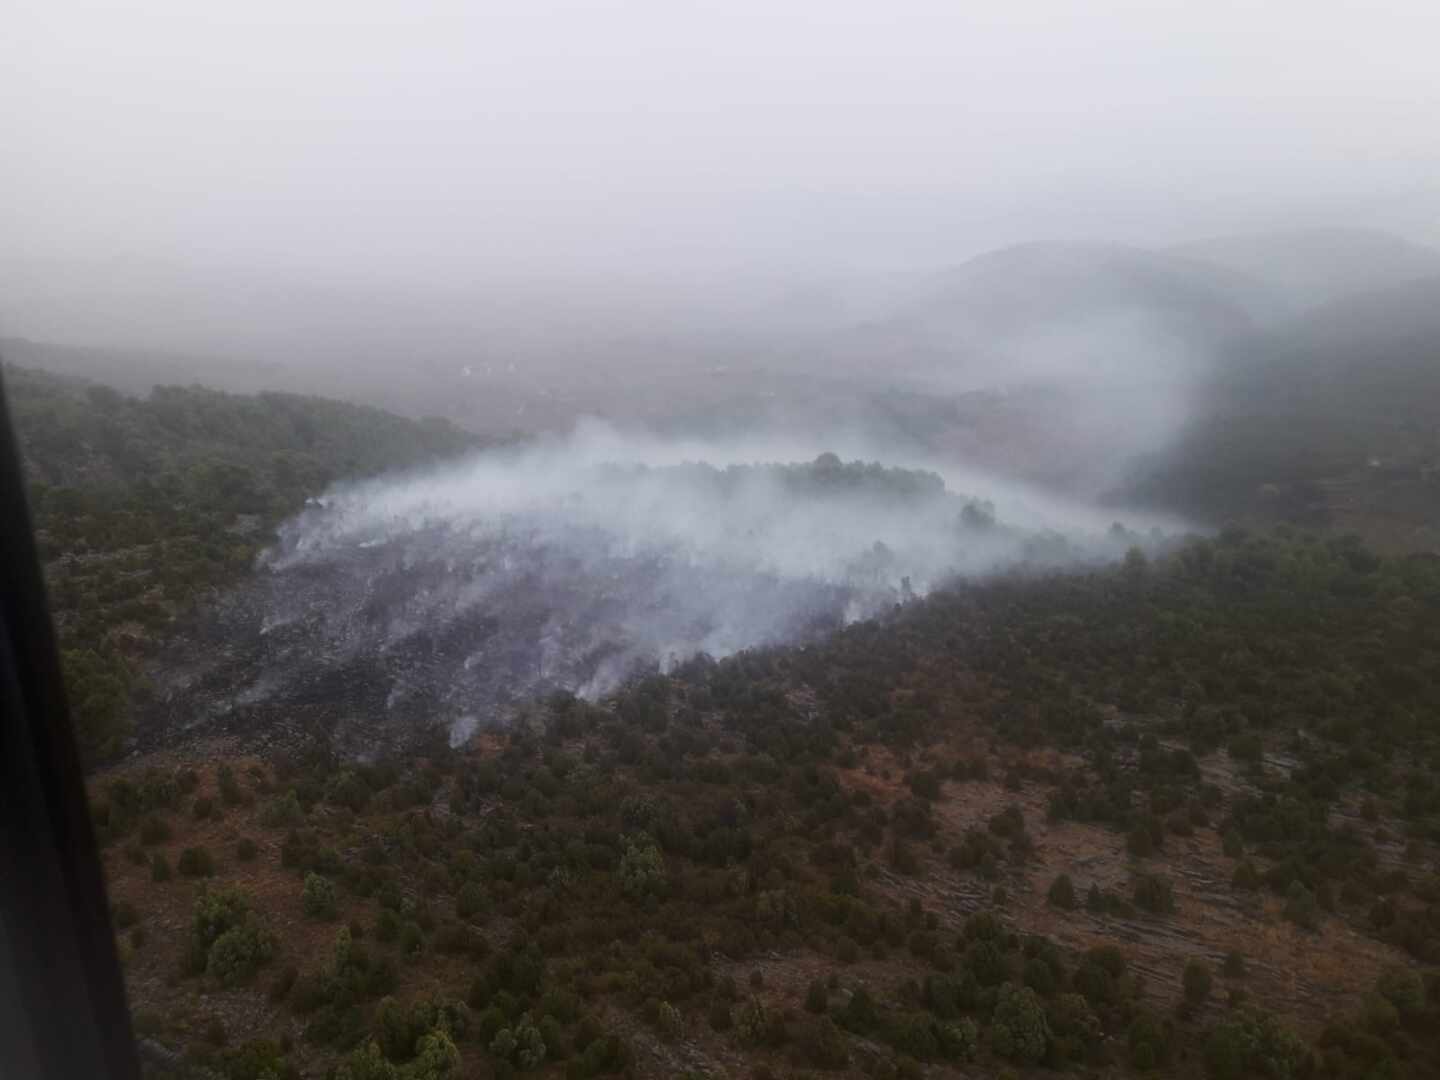 Un rayo causa un incendio forestal en Castellón